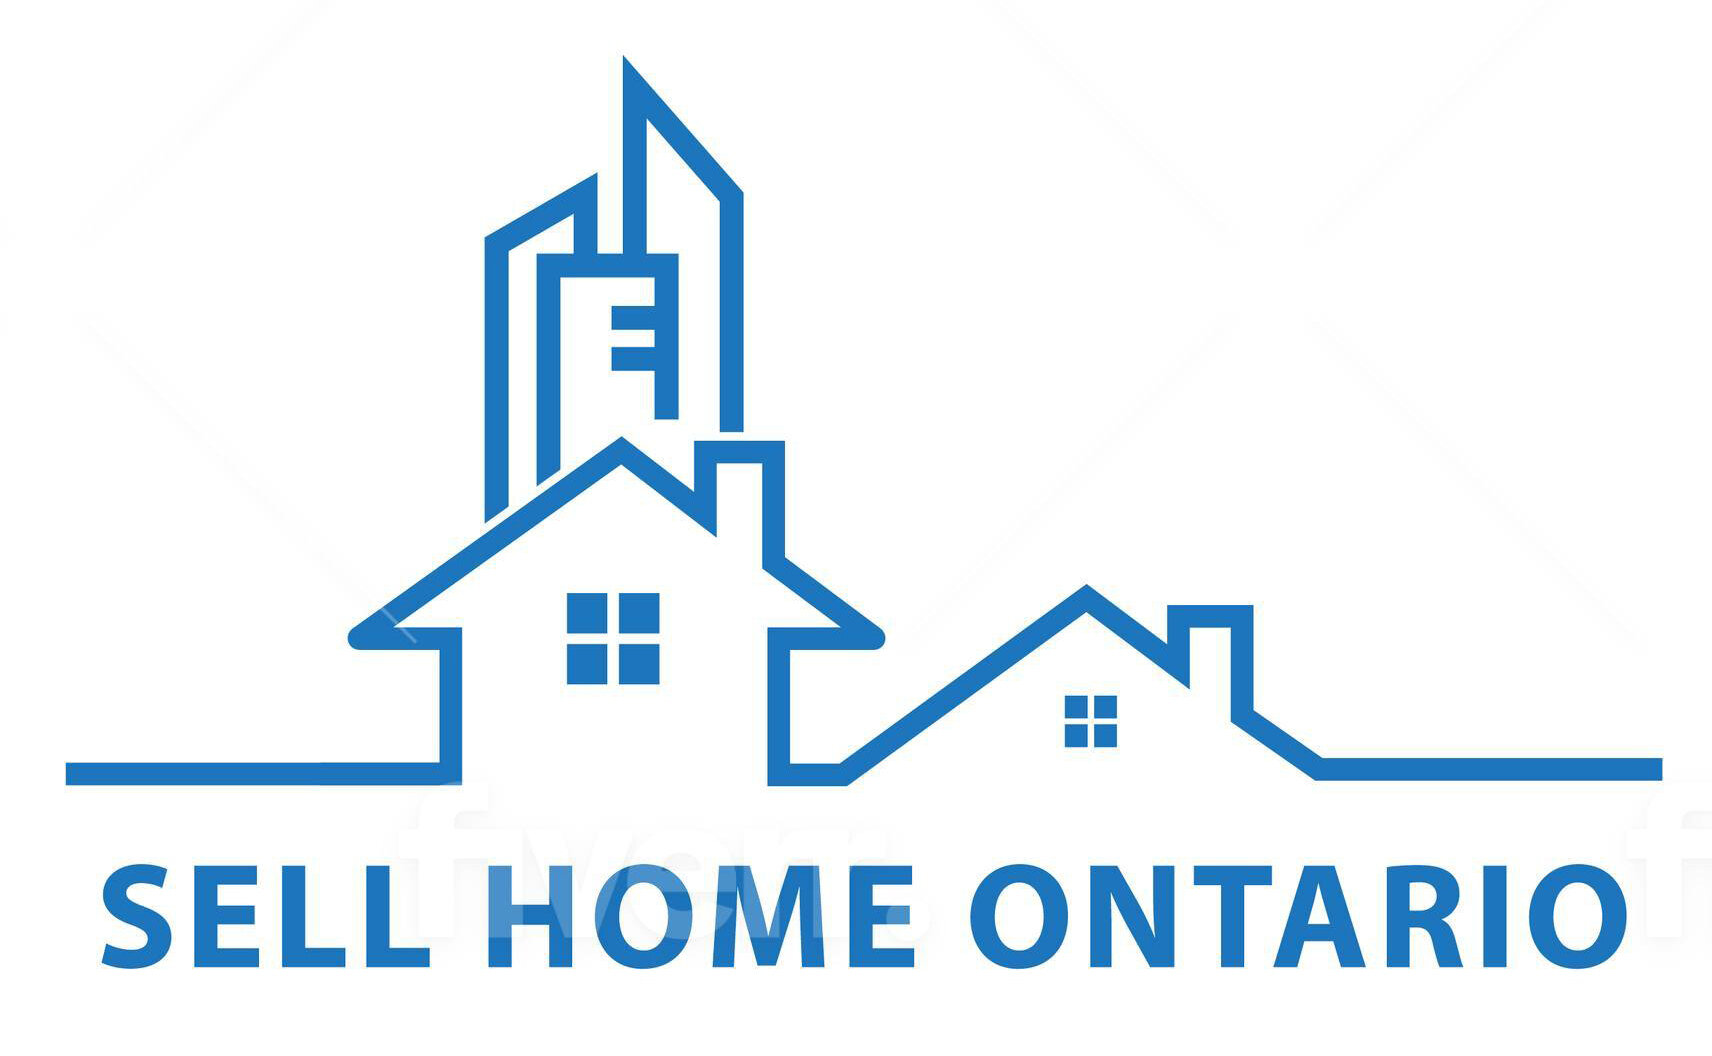 Sell Home Ontario logo